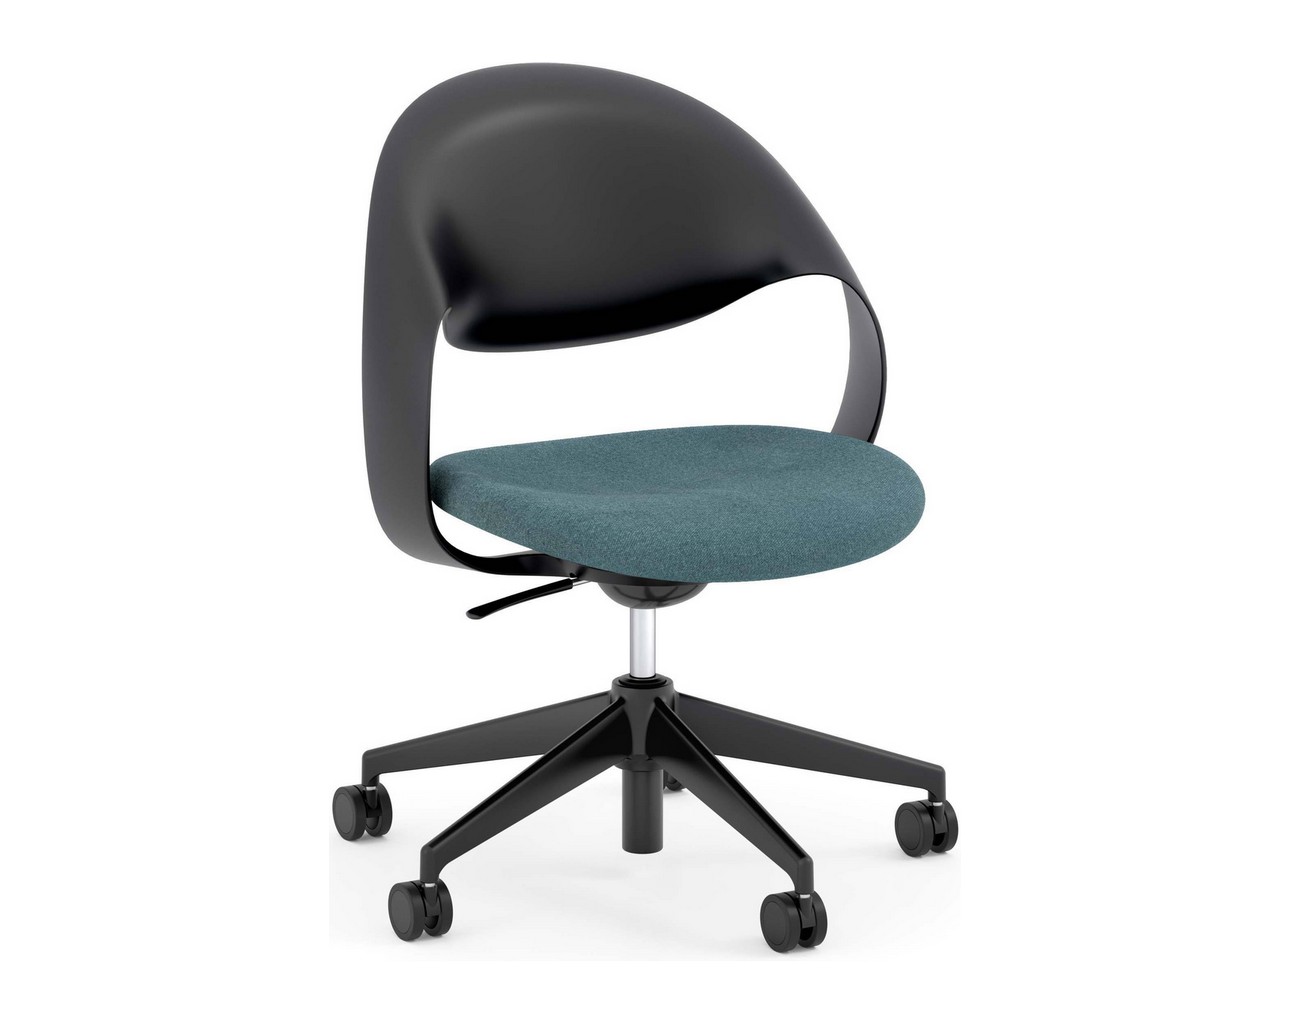 Loop Multi-Purpose Chair – Black Frame with Teal Seat